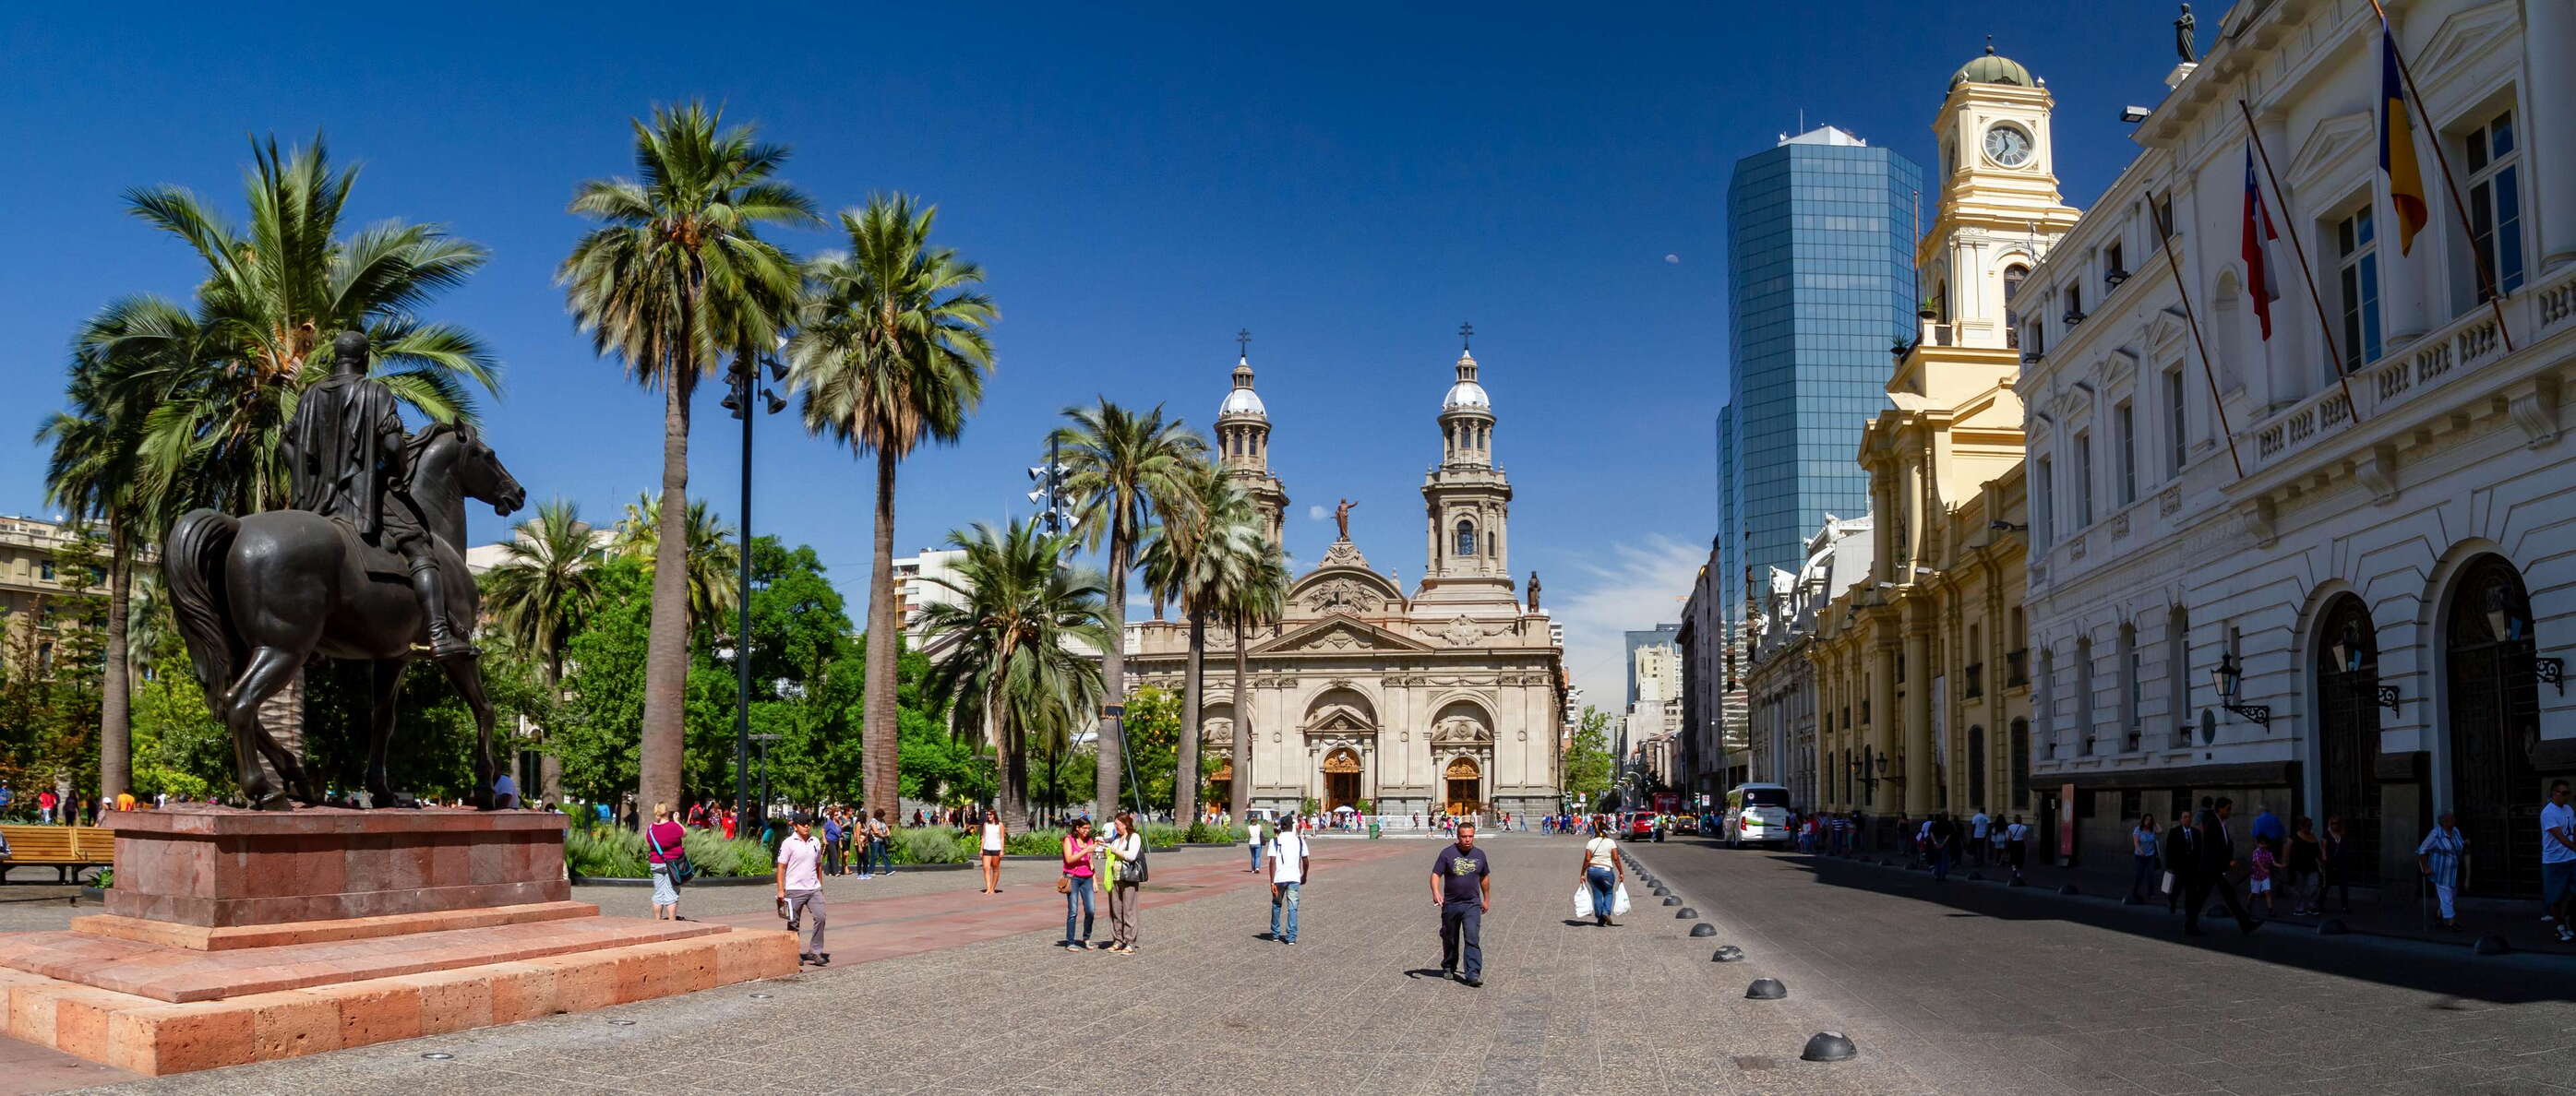 Santiago de Chile | Plaza de Armas